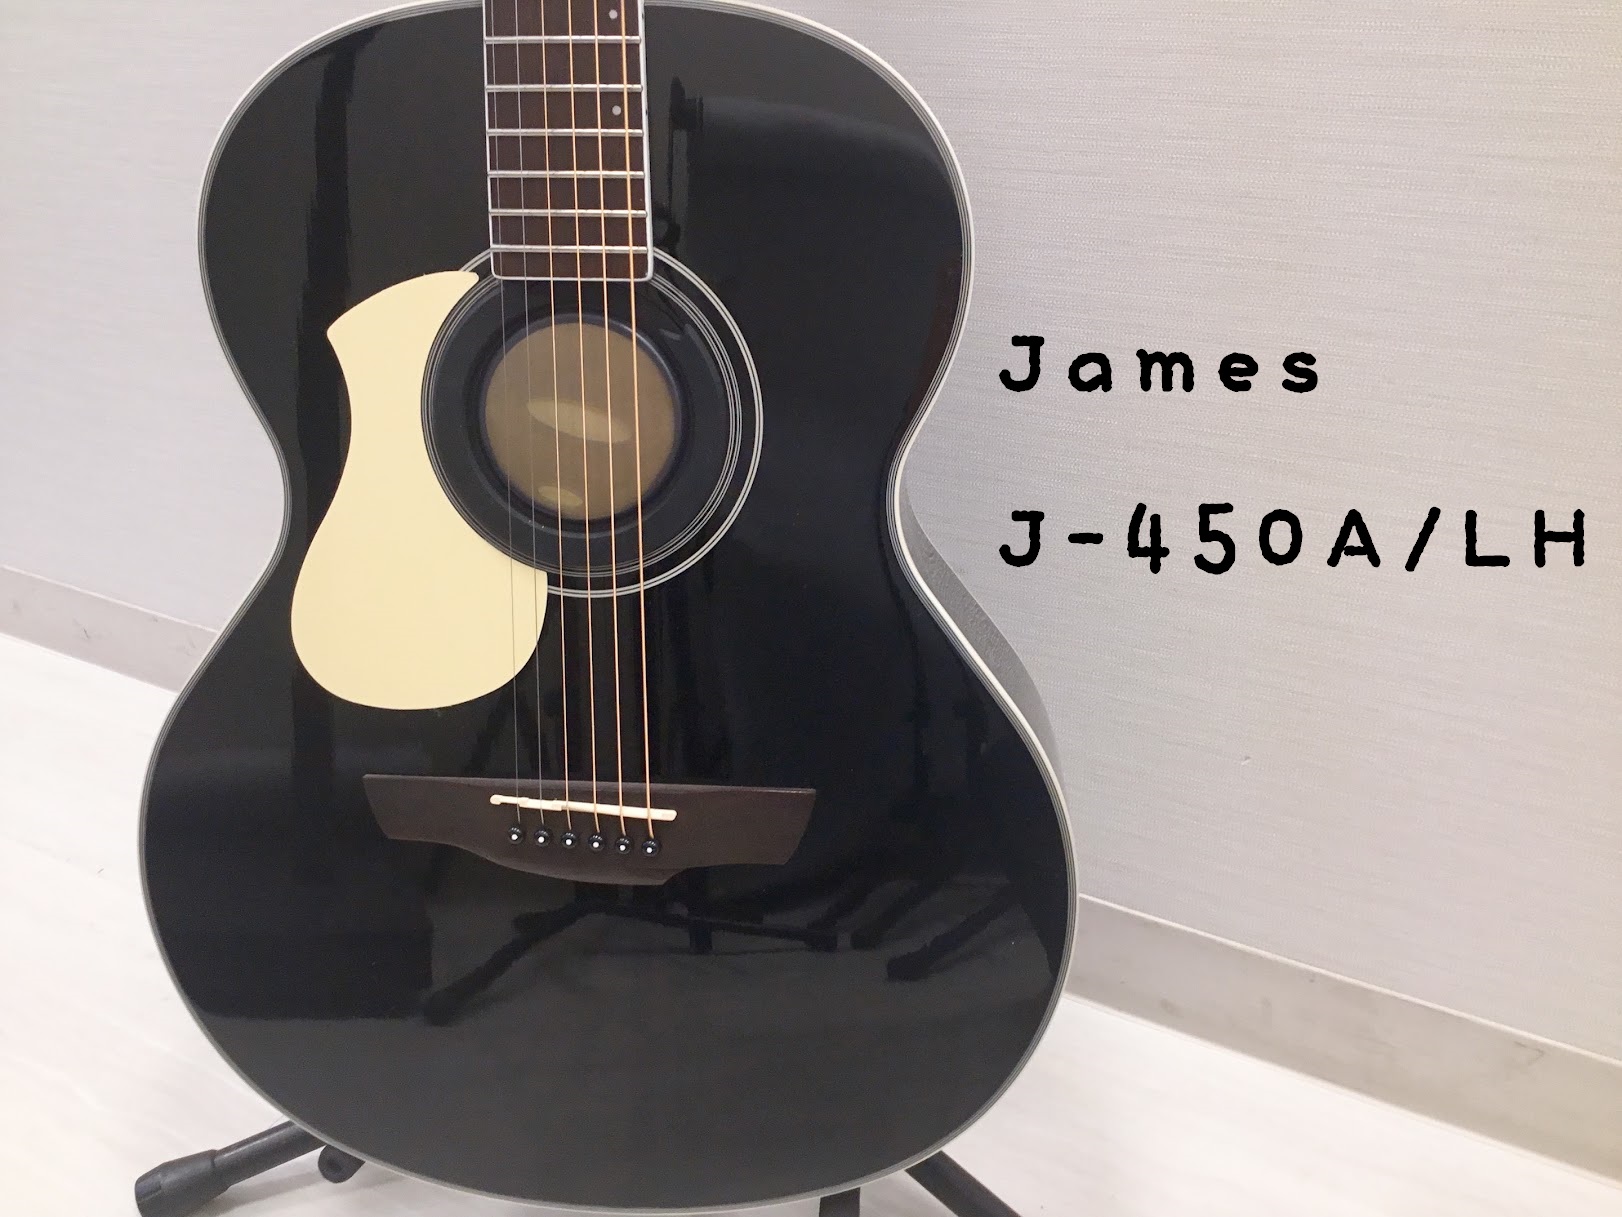 島村楽器大分店に、James(ジャームス)のアコースティックギター『J-450A/LH』が入荷致しました！ 小ぶりなボディシェイプであることから、反応の早い歯切れの良さも魅力。Jamesオリジナルデザインの小さめで取り回しが良く、演奏性に優れたエントリーモデルです！ ボディのサイドとバックに採用した […]